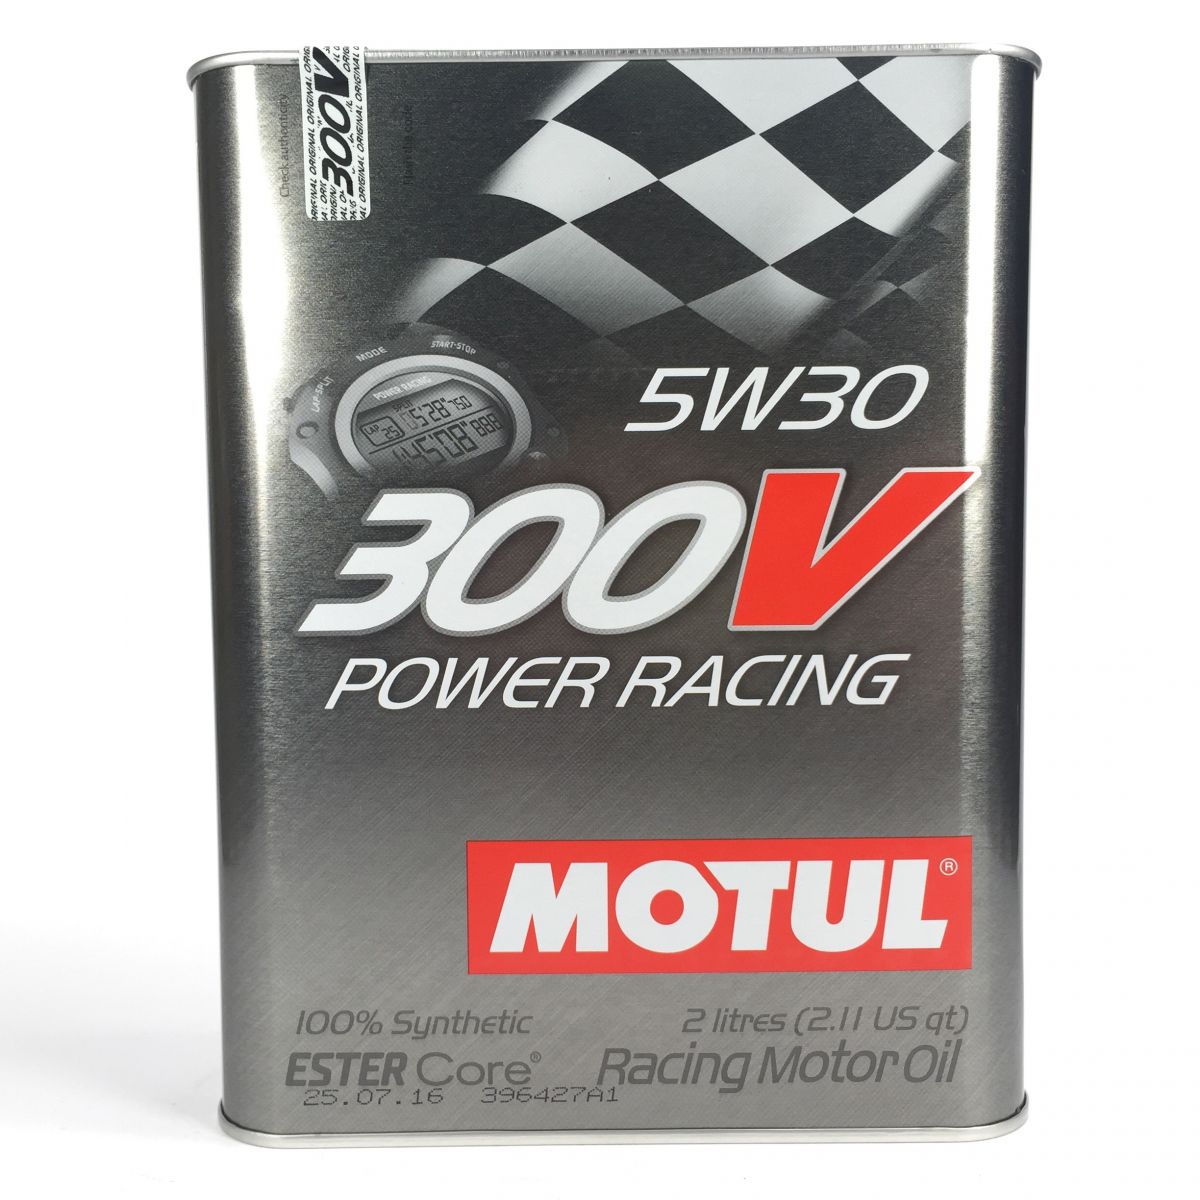 Купить масло motul 5w30. Motul 300v Power Racing 5w30. Motul 104241 масло моторное синтетическое "300v Power Racing 5w-30", 2л. Motul 300v Power Racing ester Core 5w30 2л. Motul 300v 5w30 Power Synt.